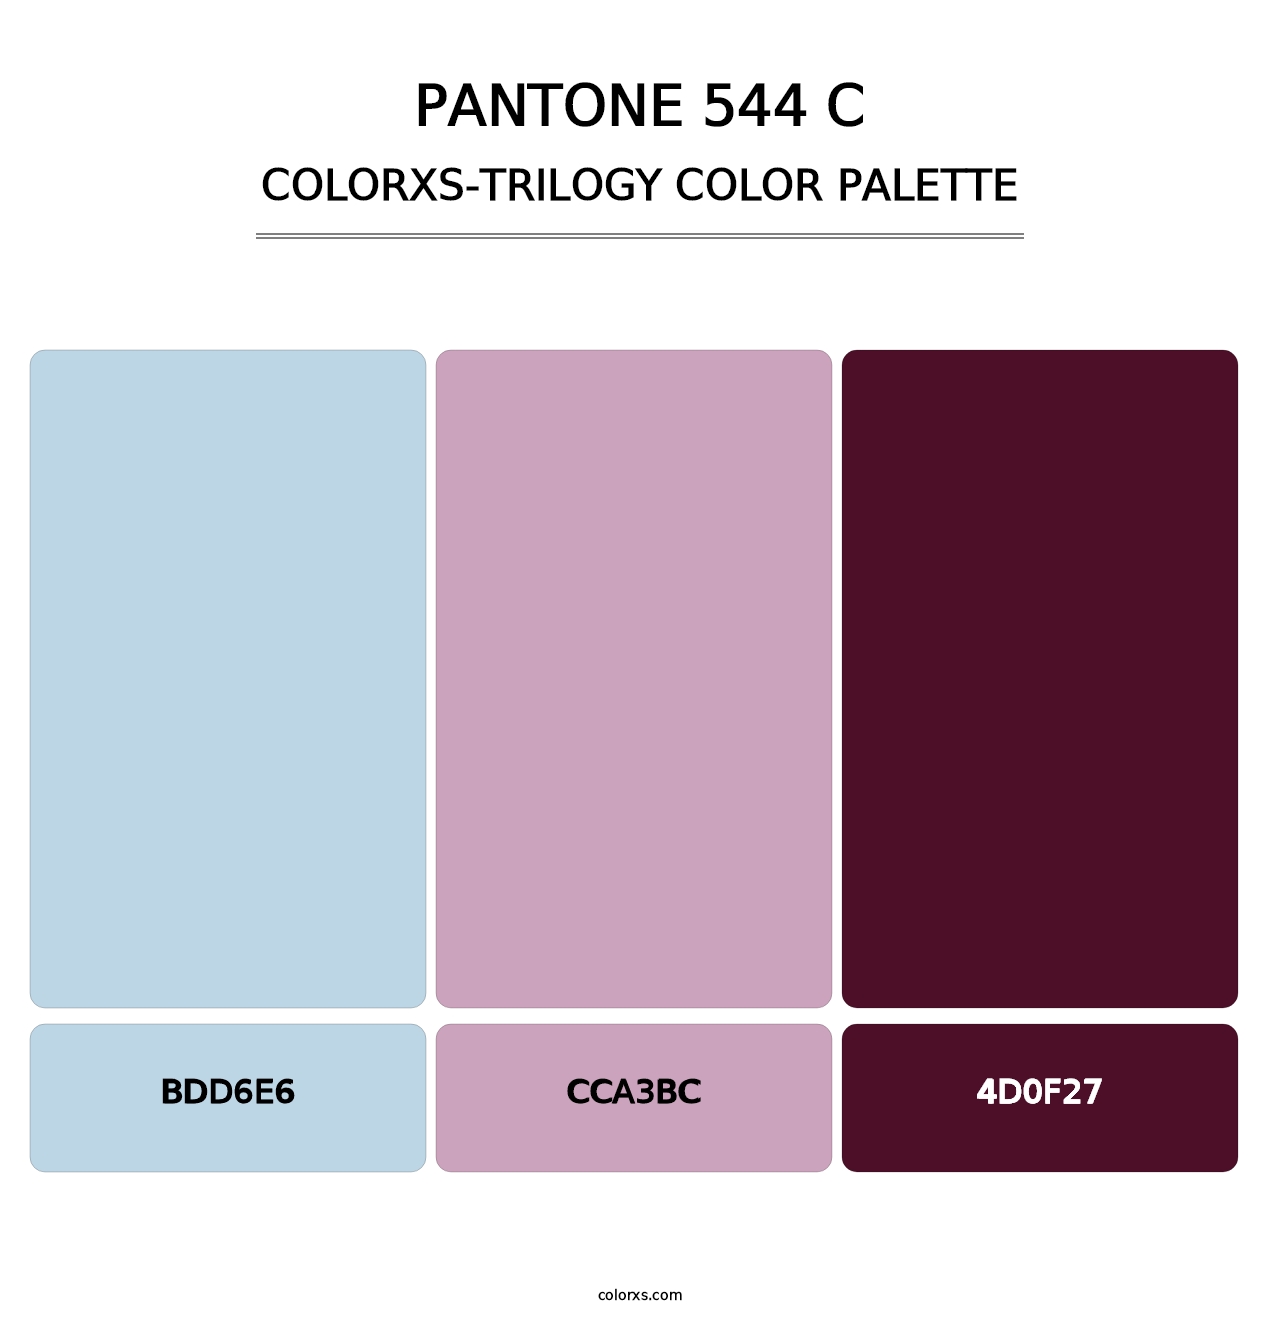 PANTONE 544 C - Colorxs Trilogy Palette